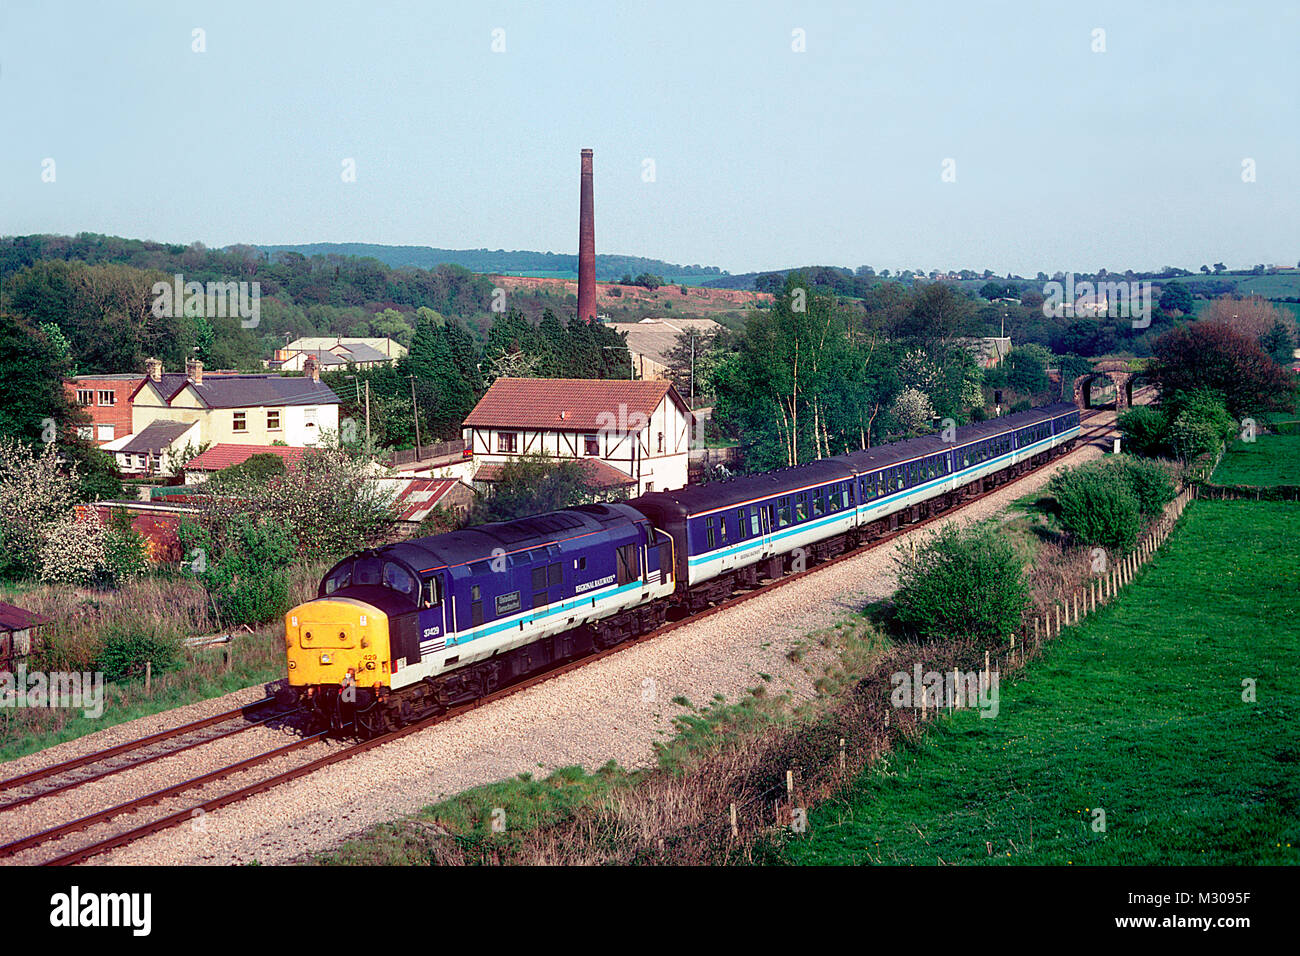 Eine Klasse 37 Diesellok Reihe 37429 Arbeiten eine regionale Eisenbahnen service Ponthir in South Wales am 6. Mai 1995. Stockfoto